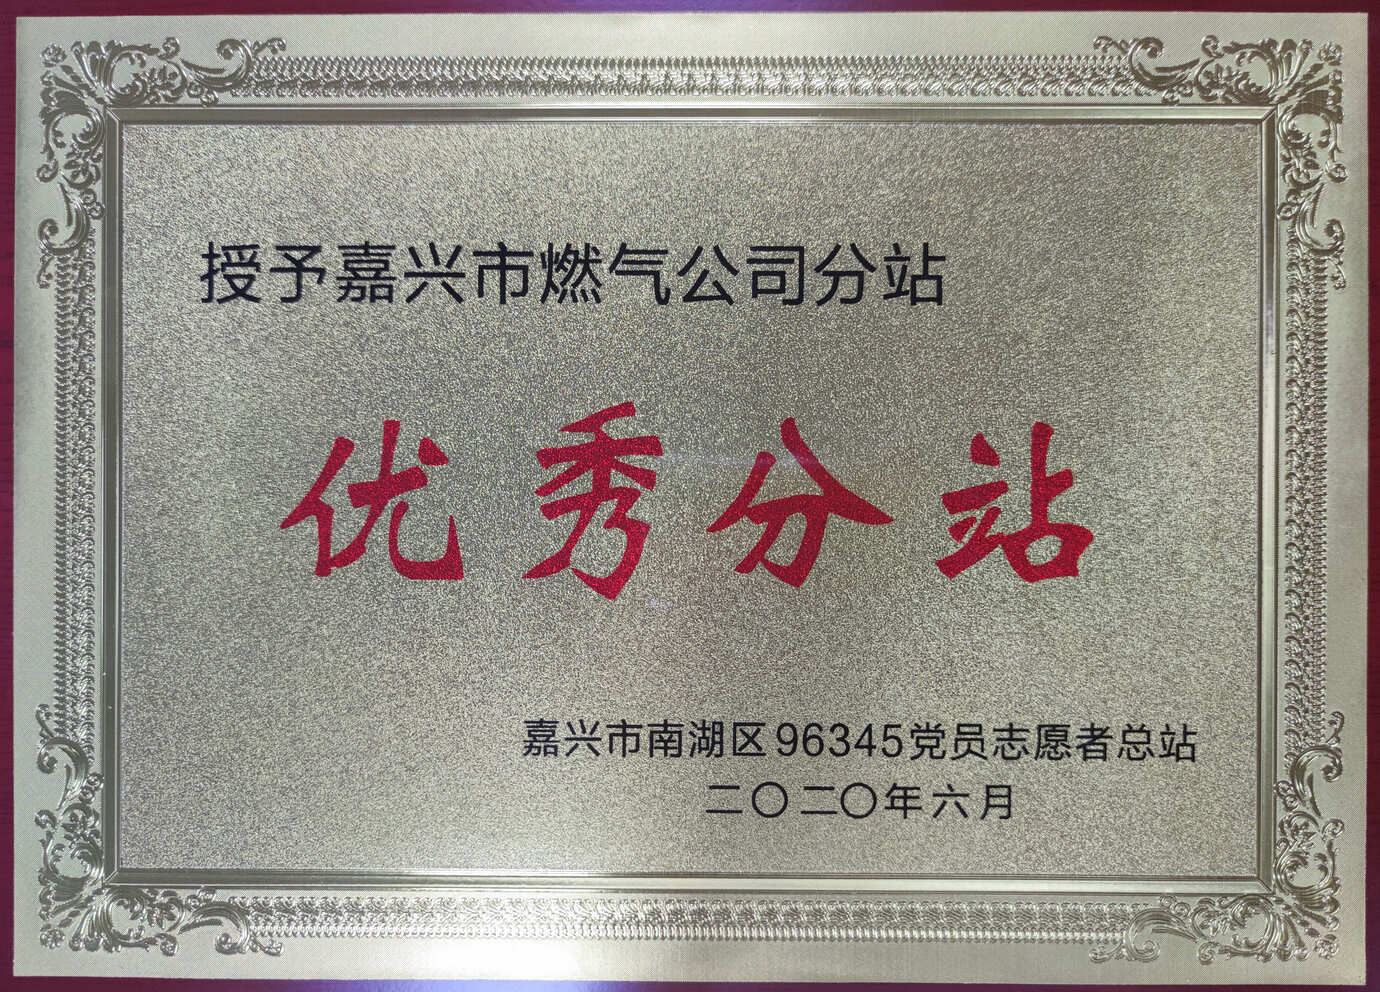 2020年6月，被嘉兴市南湖区96345党员志愿者总站授予”优秀分站“荣誉称号。.jpg